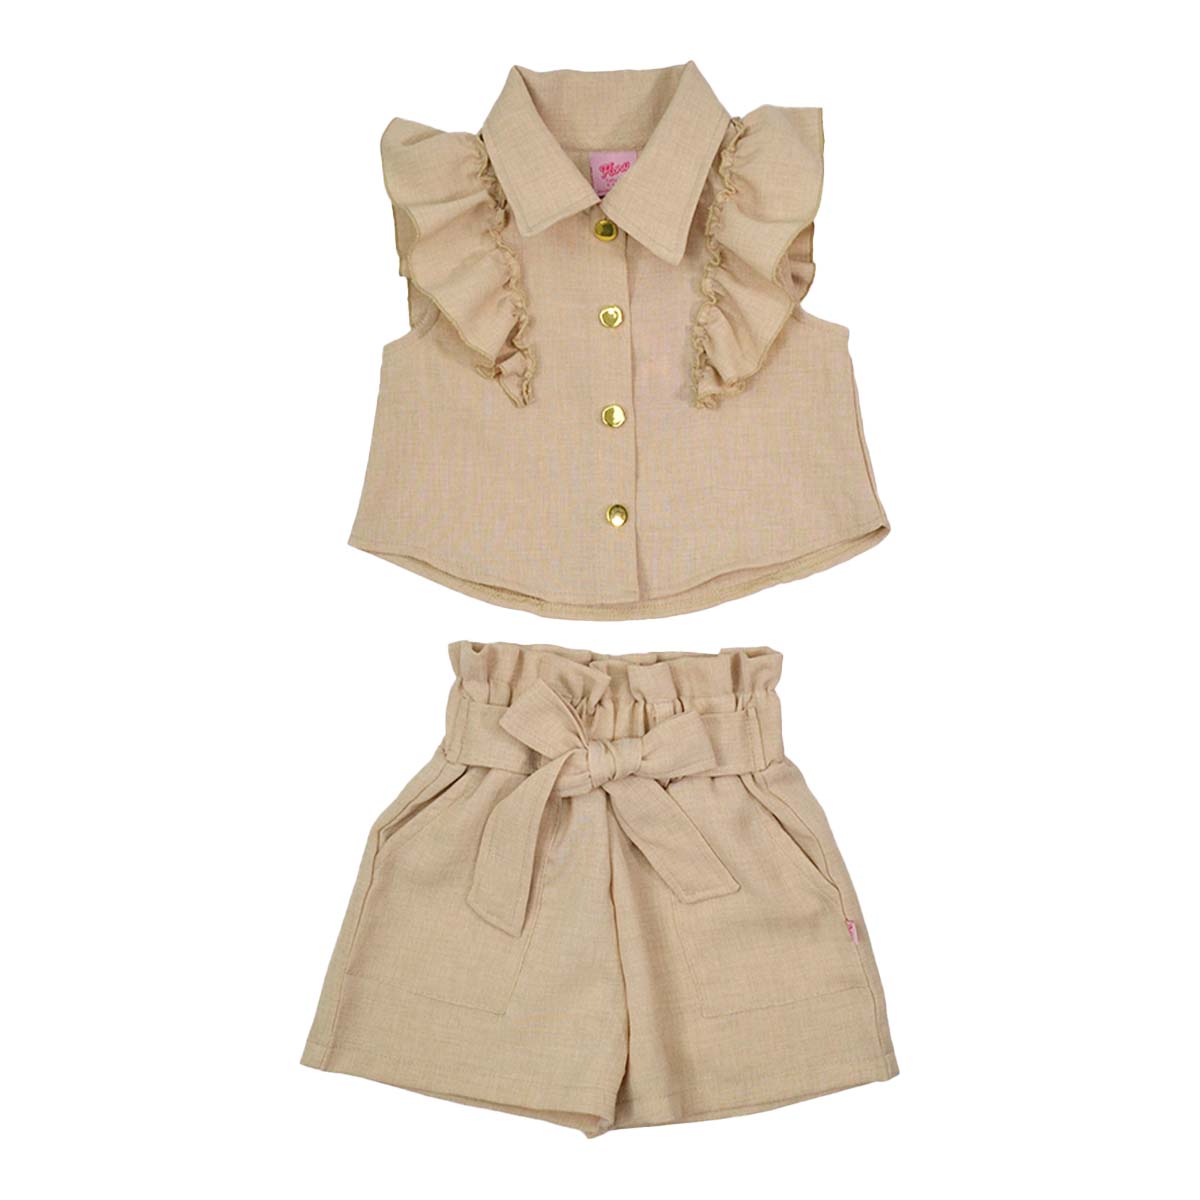 Conjunto blusa short de lino niña FLORY CONI0018